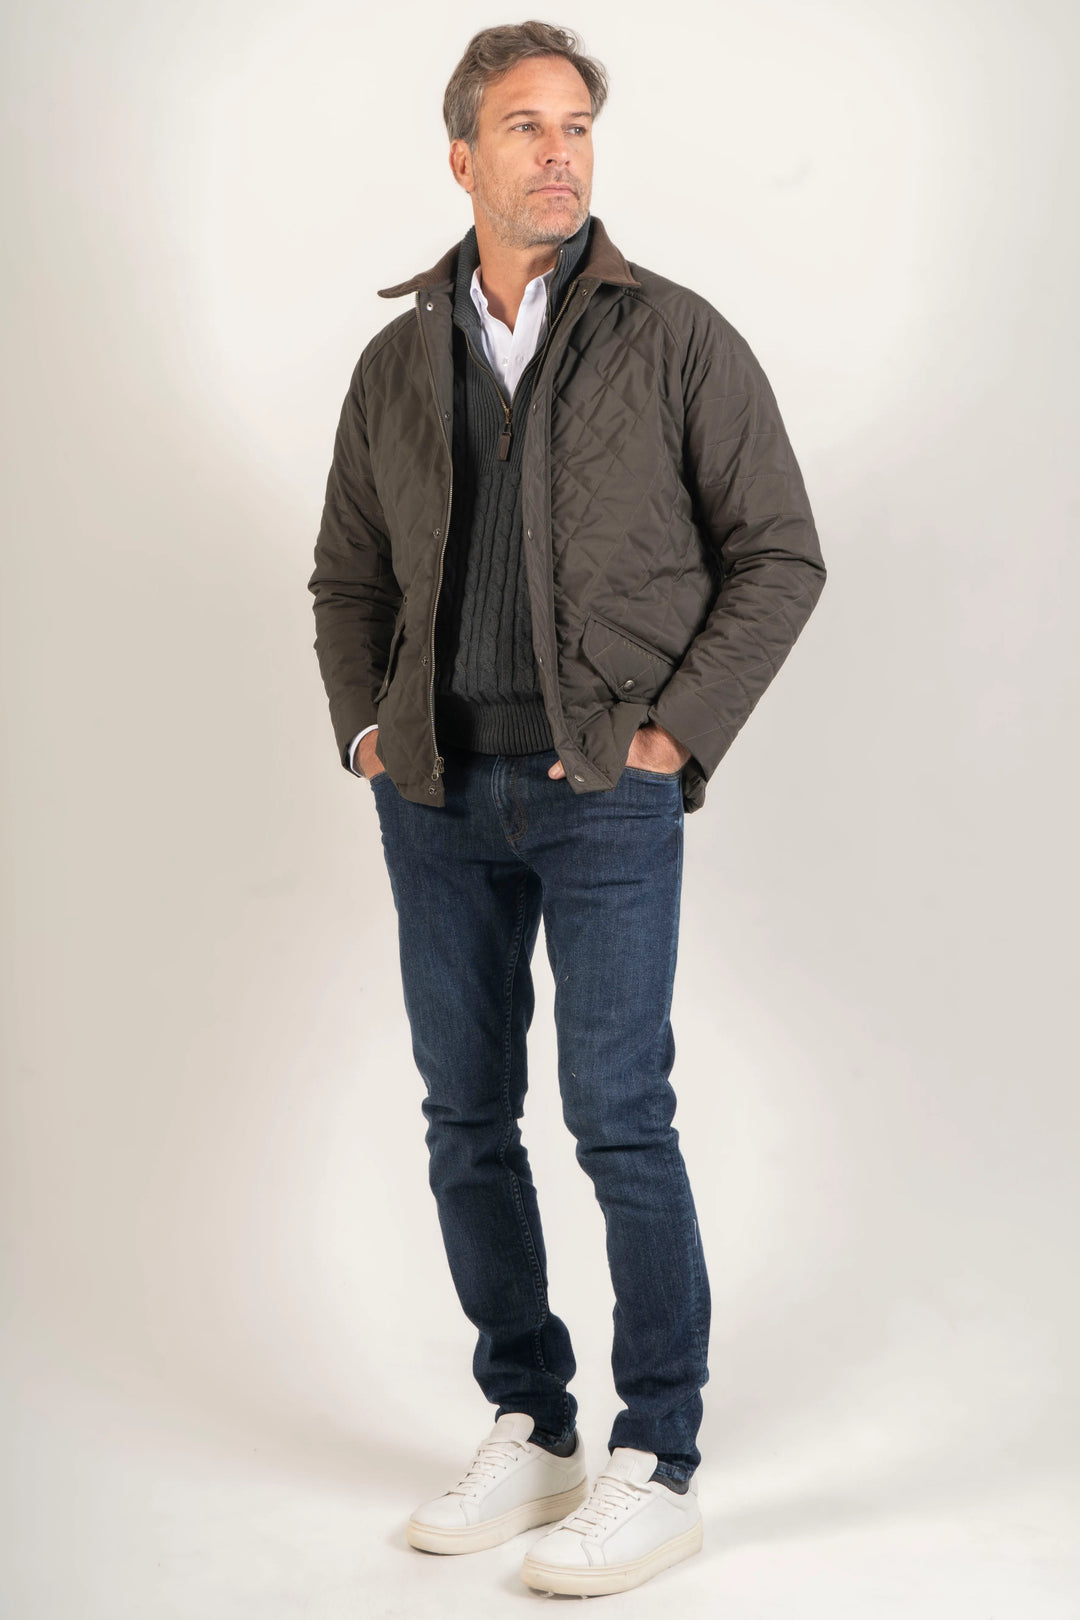 Modelo masculino vistiendo la Chaqueta para hombre Balmoral Verde en un entorno urbano. La chaqueta se combina con jeans y zapatos casuales para un look informal.